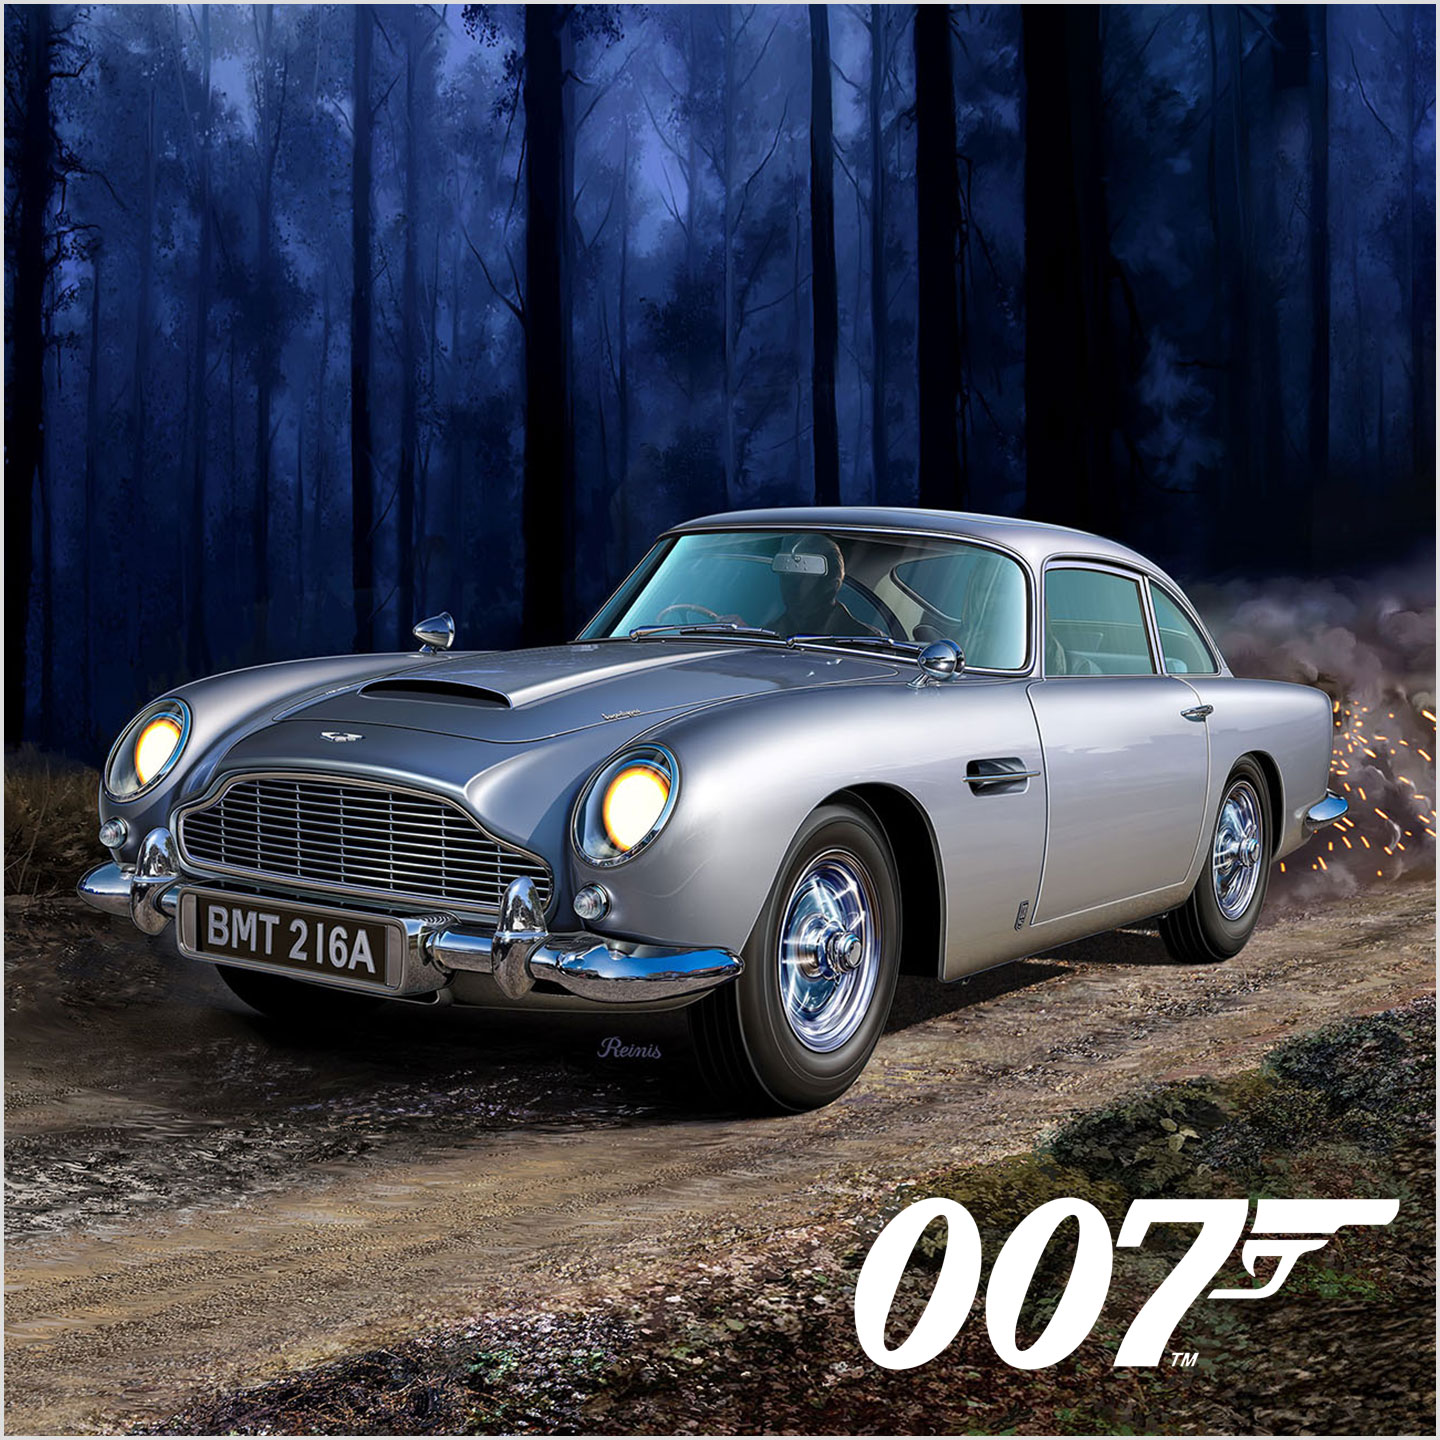 Revell Model making – James Bond 007